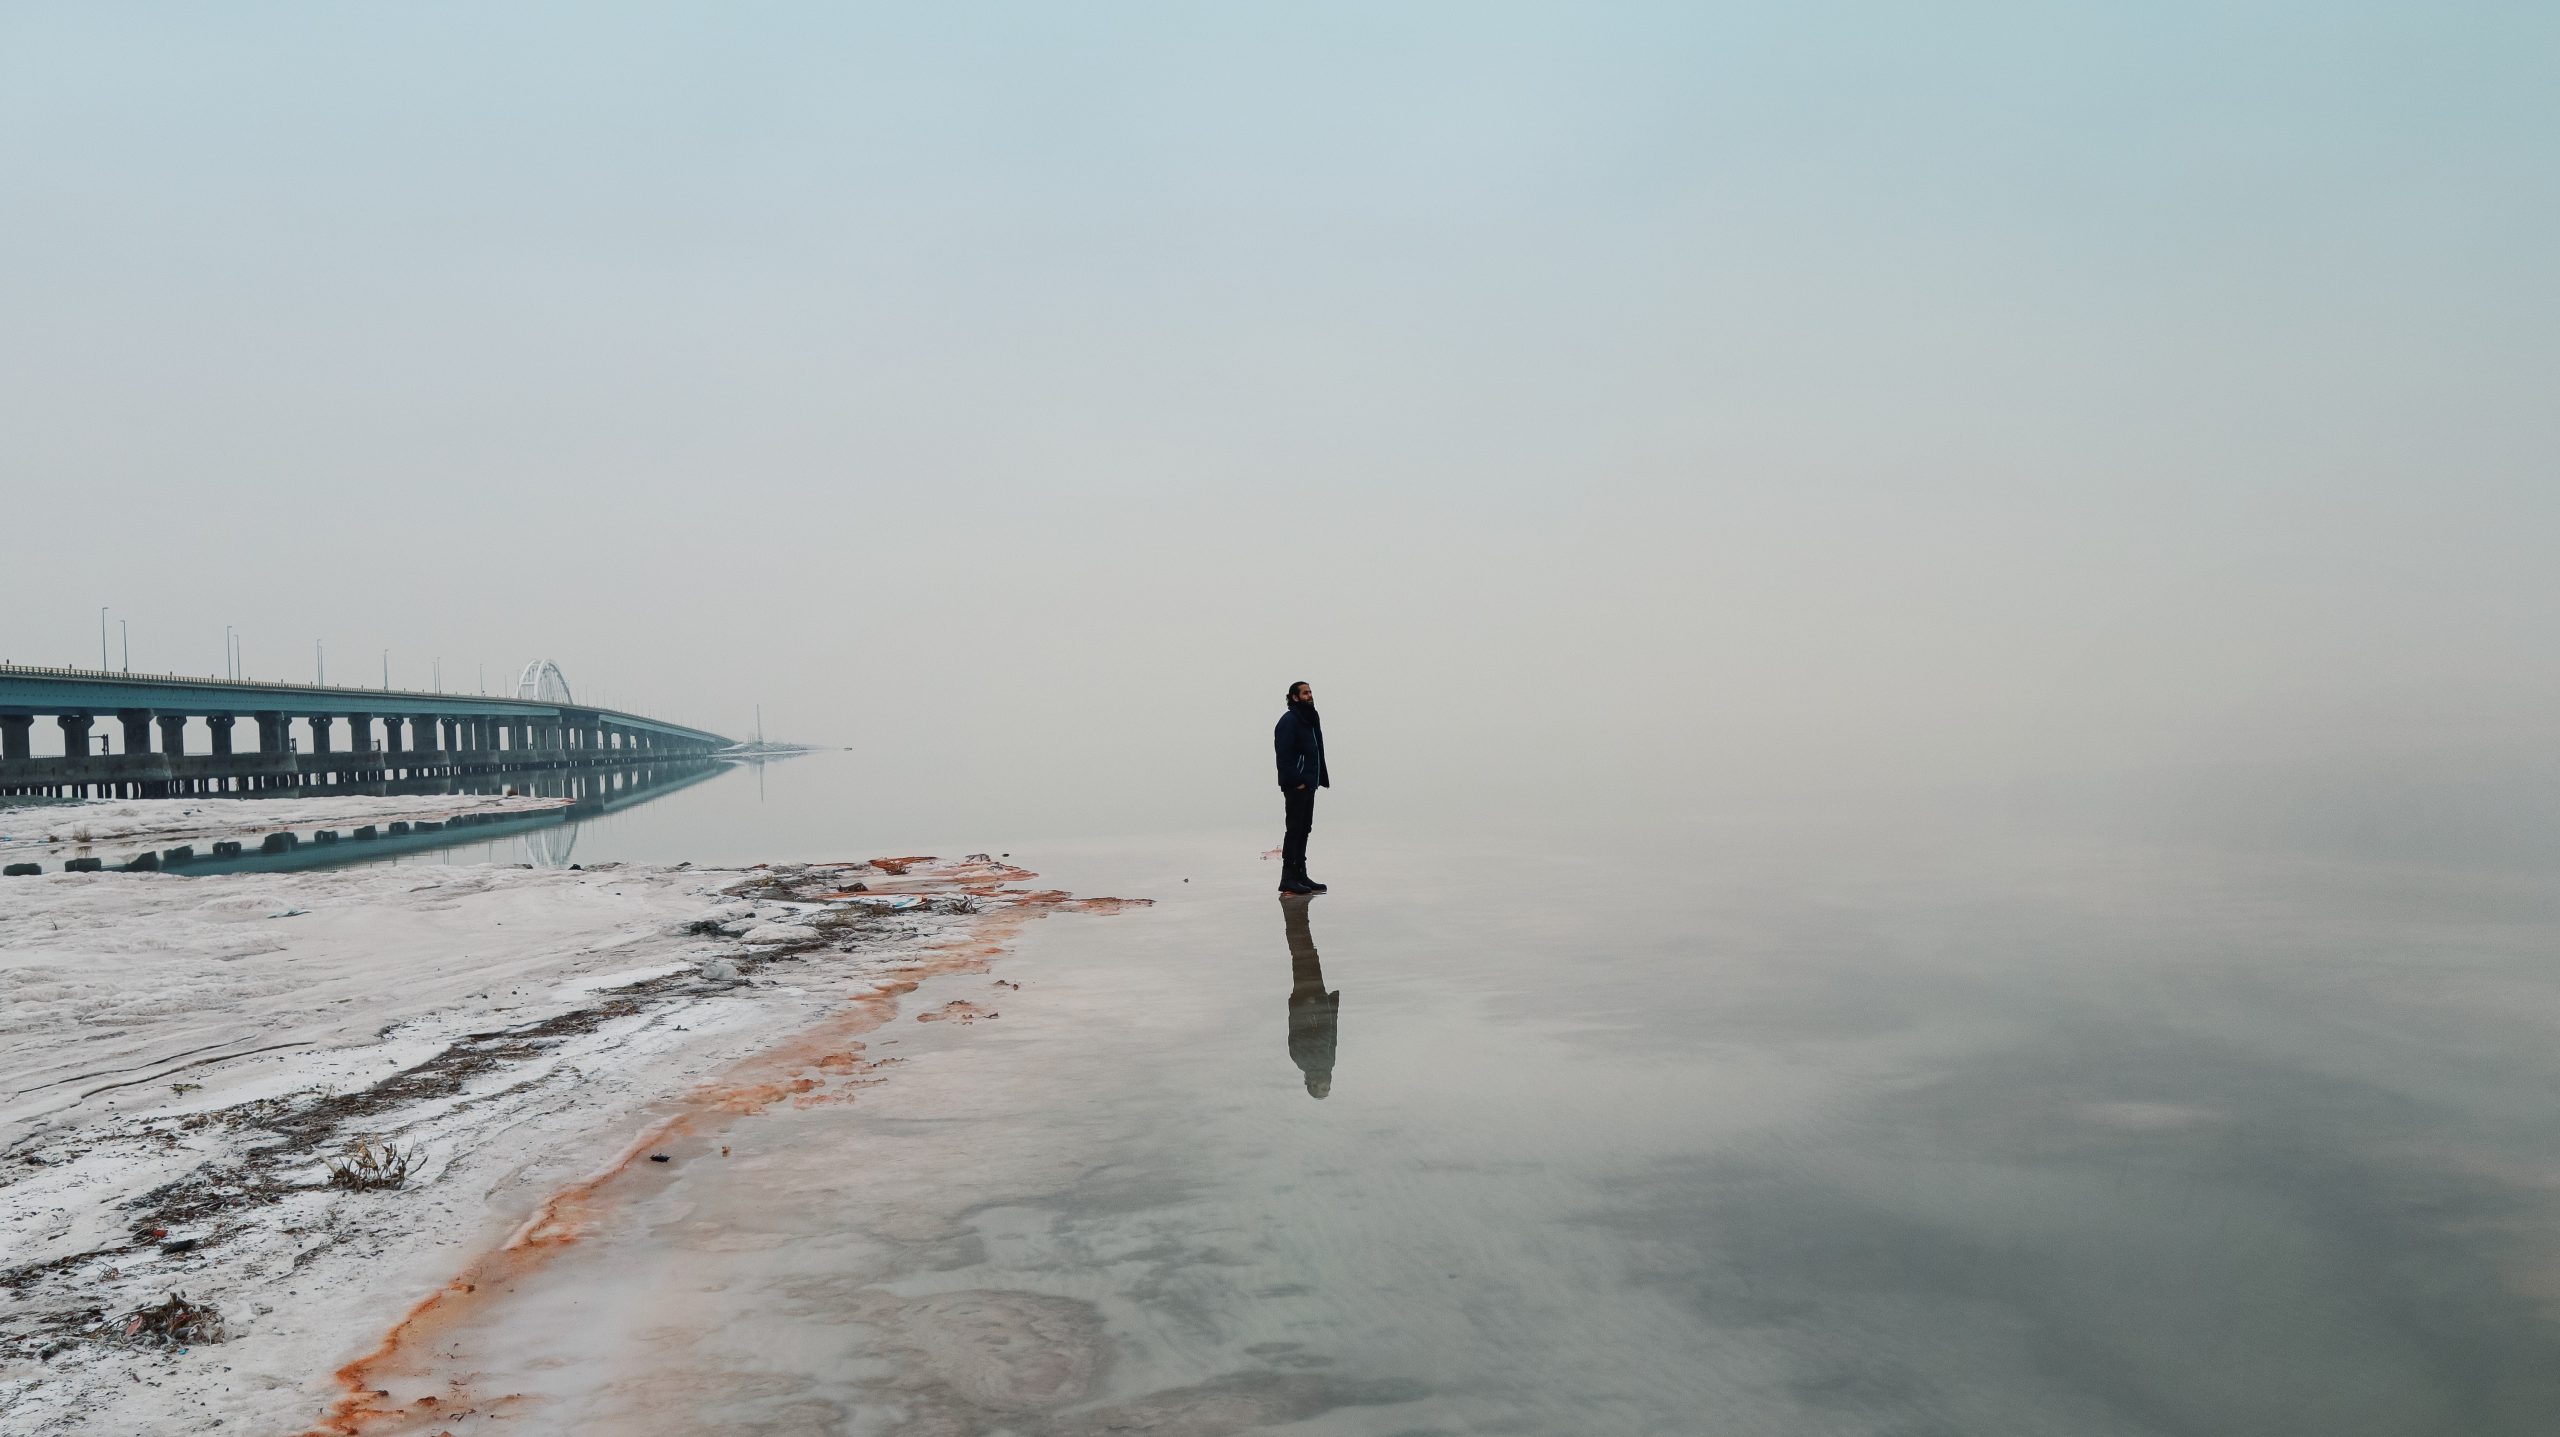 Man on a beach | Photo by Farhad Fallahzad on Unsplash